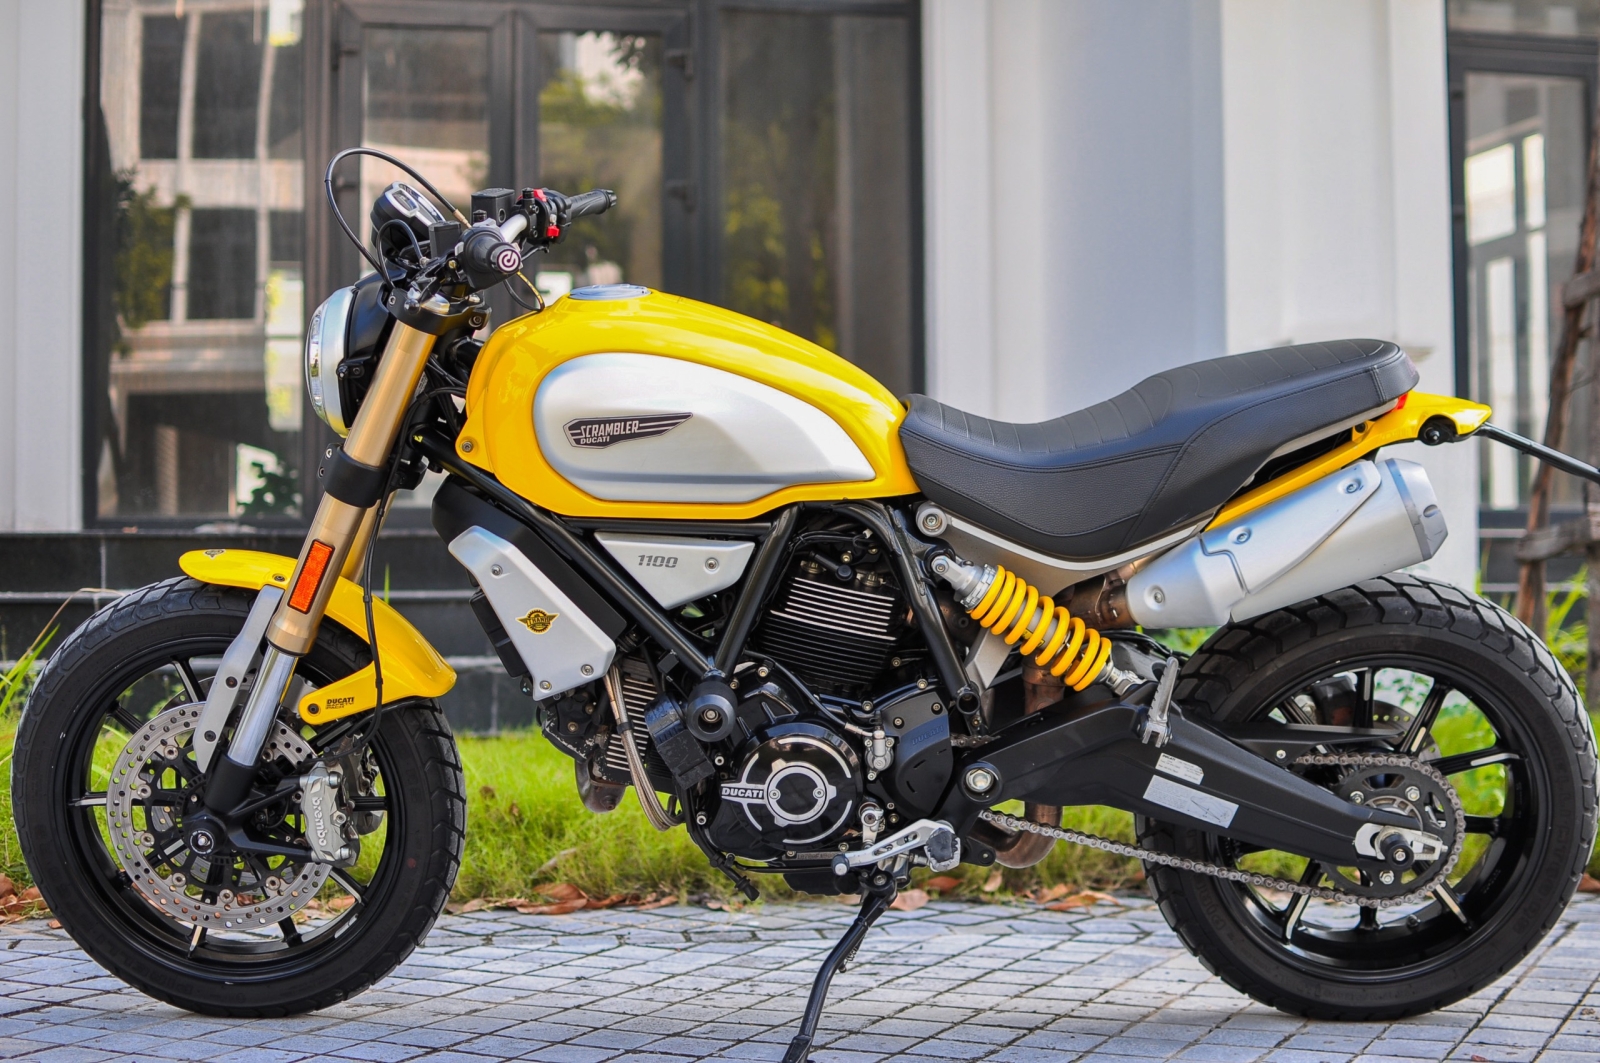 Ducati Scrambler_1100 model 2019 